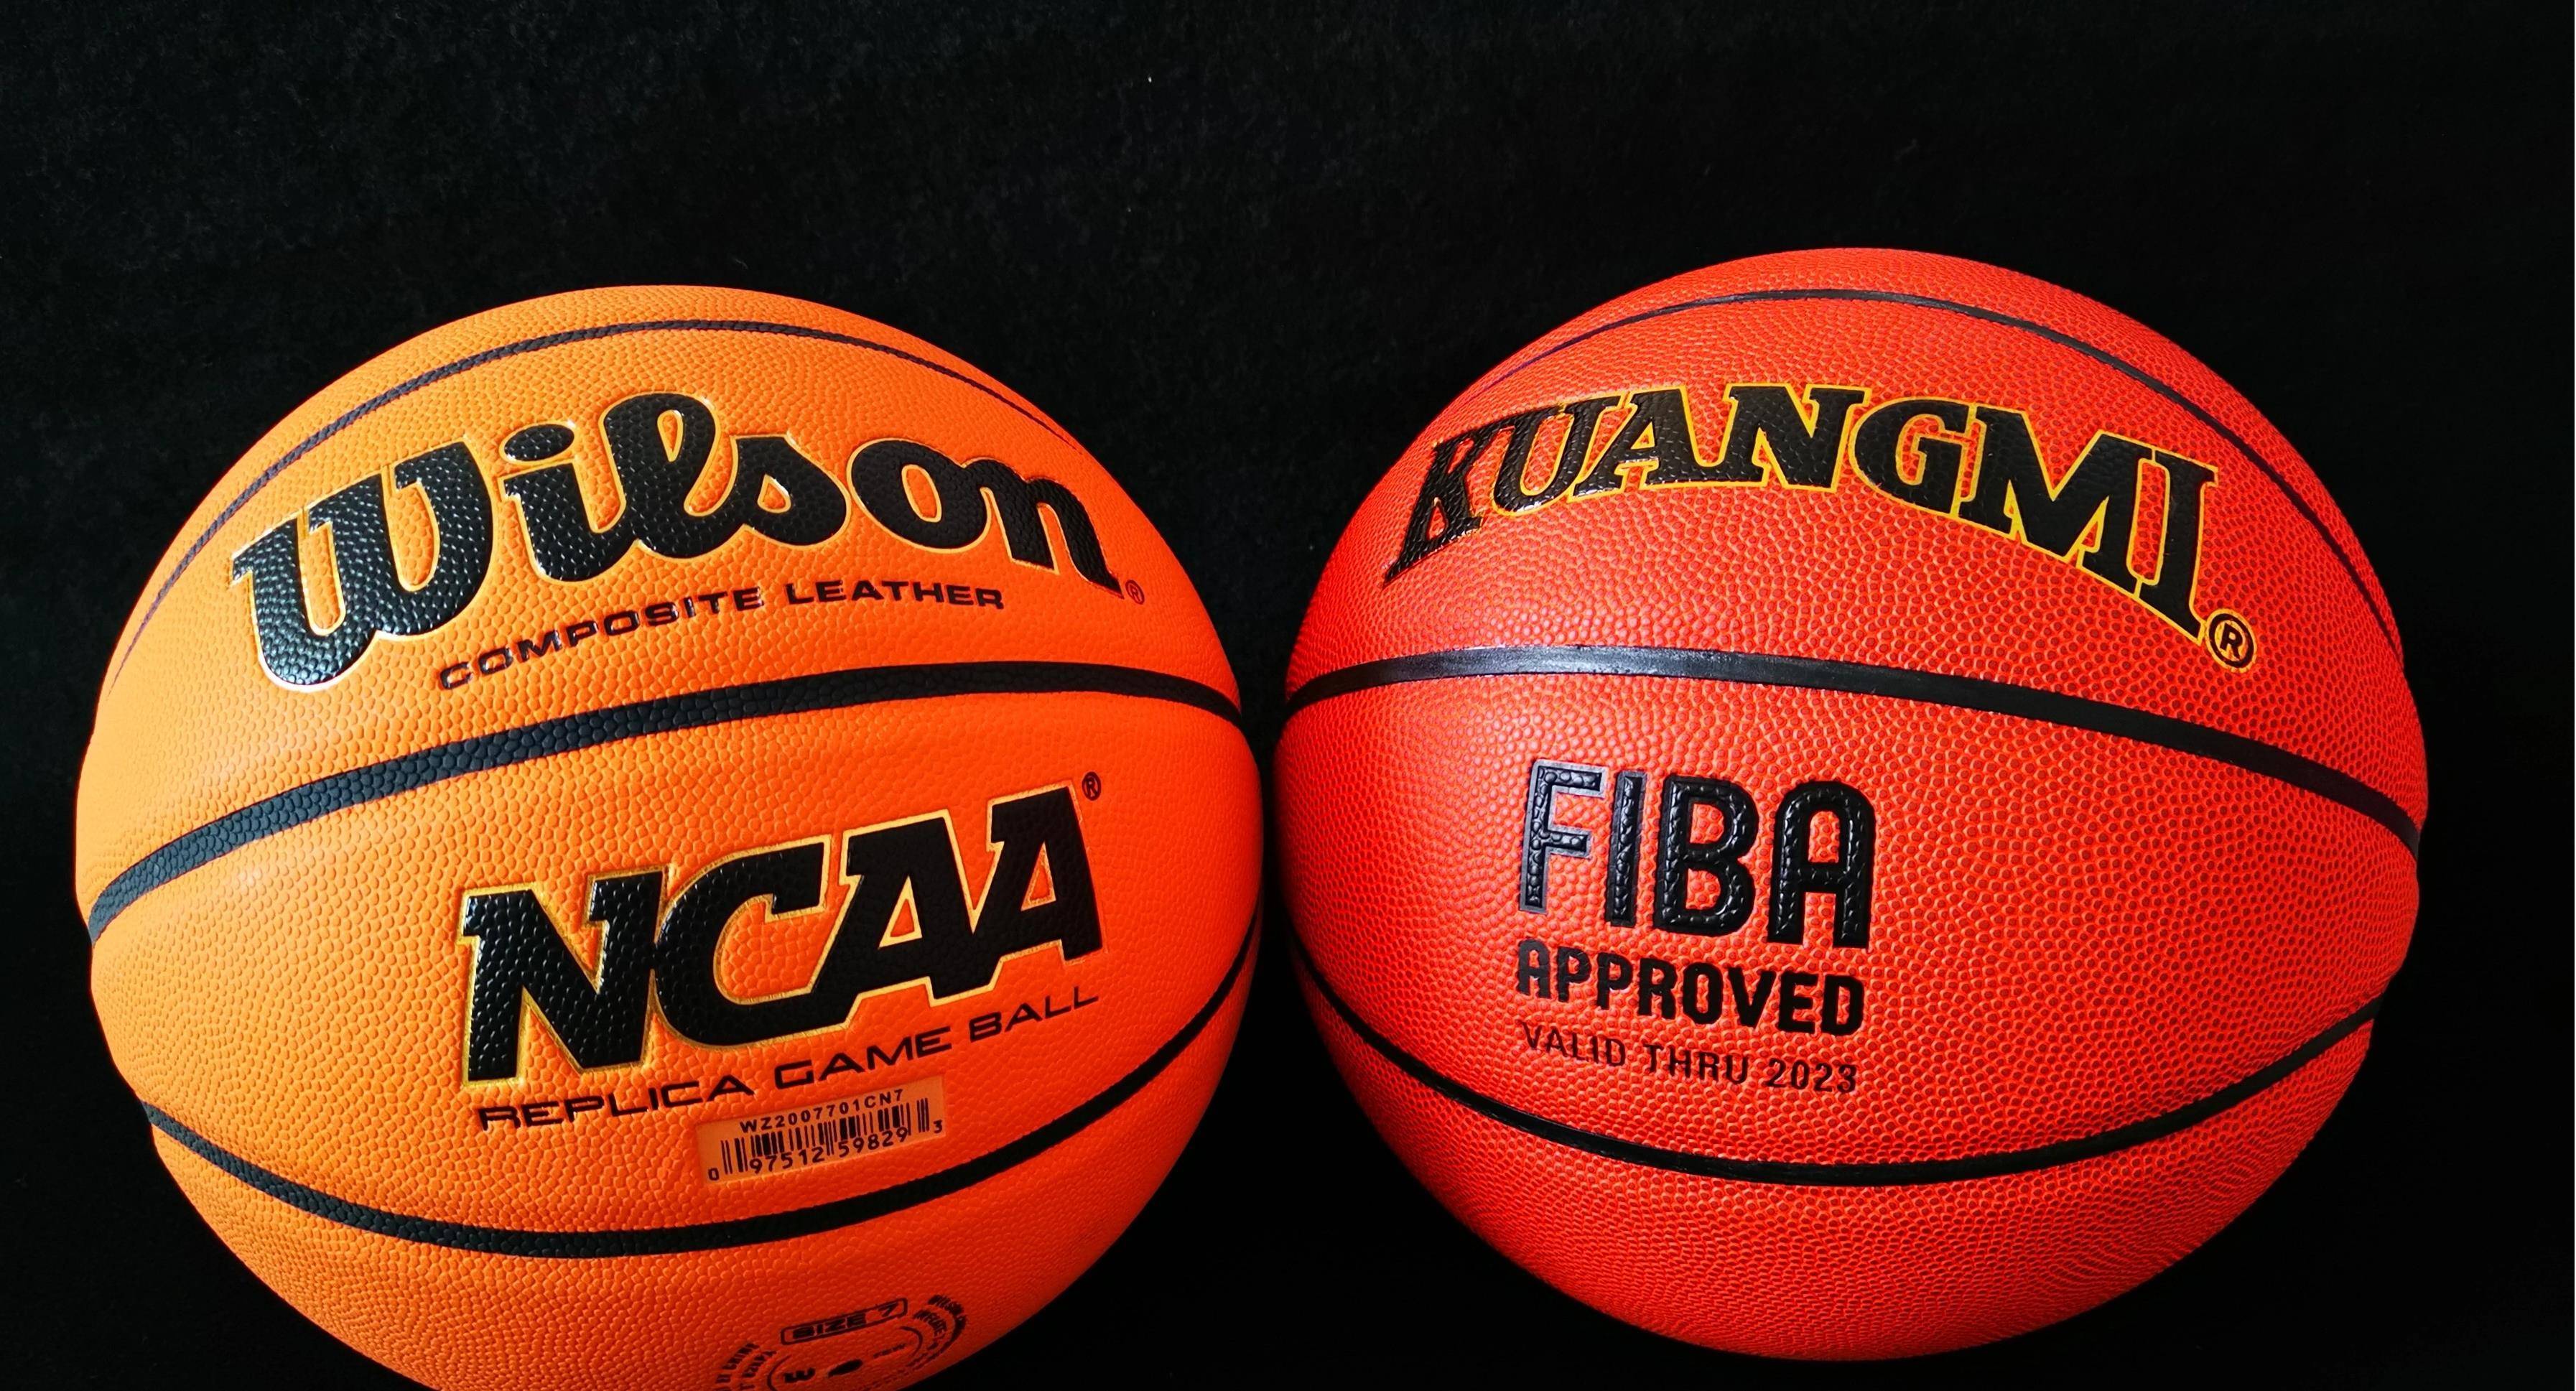 原创             意外的一颗好球，狂迷FIBA认证篮球体验对比